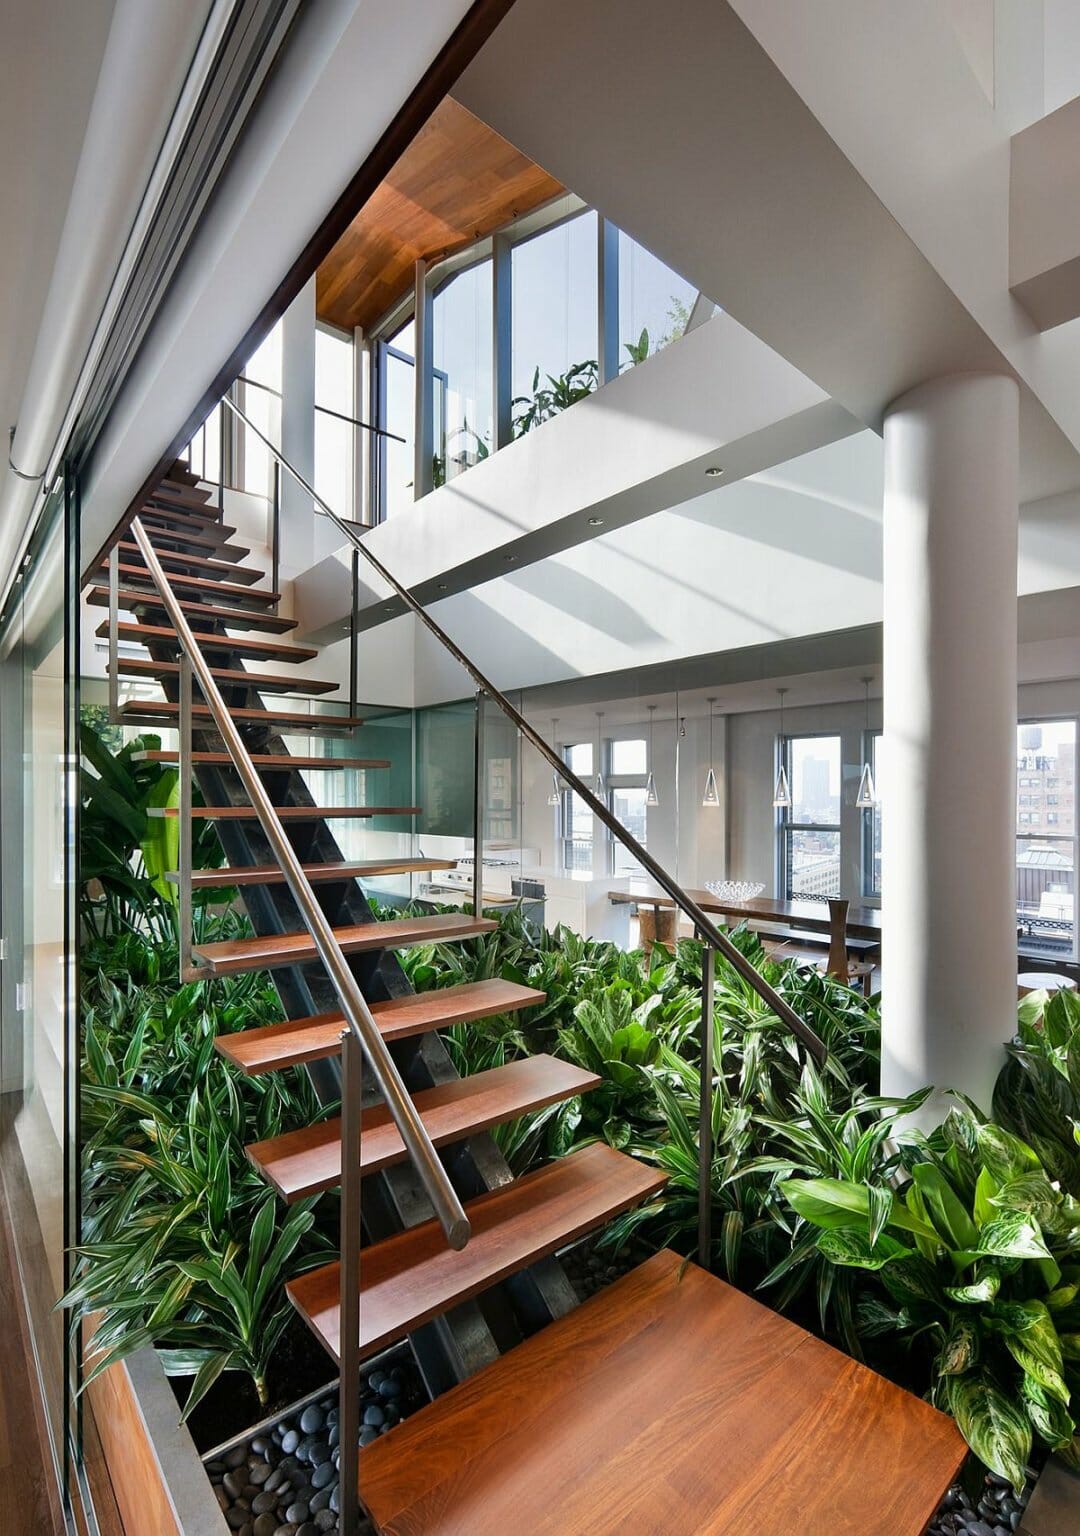 Hình ảnh cây xanh trồng dưới gầm cầu thang giúp cải thiện chất lượng không khí trong nhà